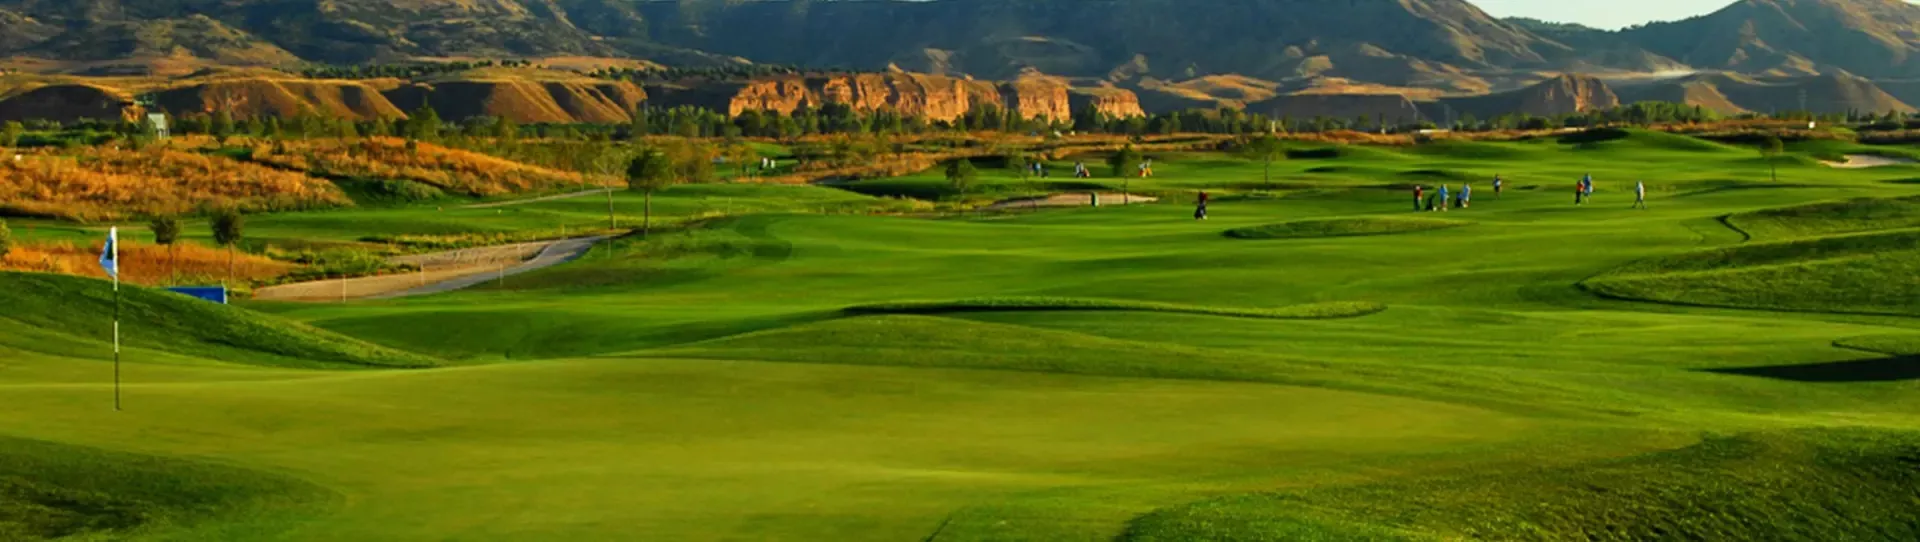 Spain golf courses - El Encin Golf Course - Photo 2